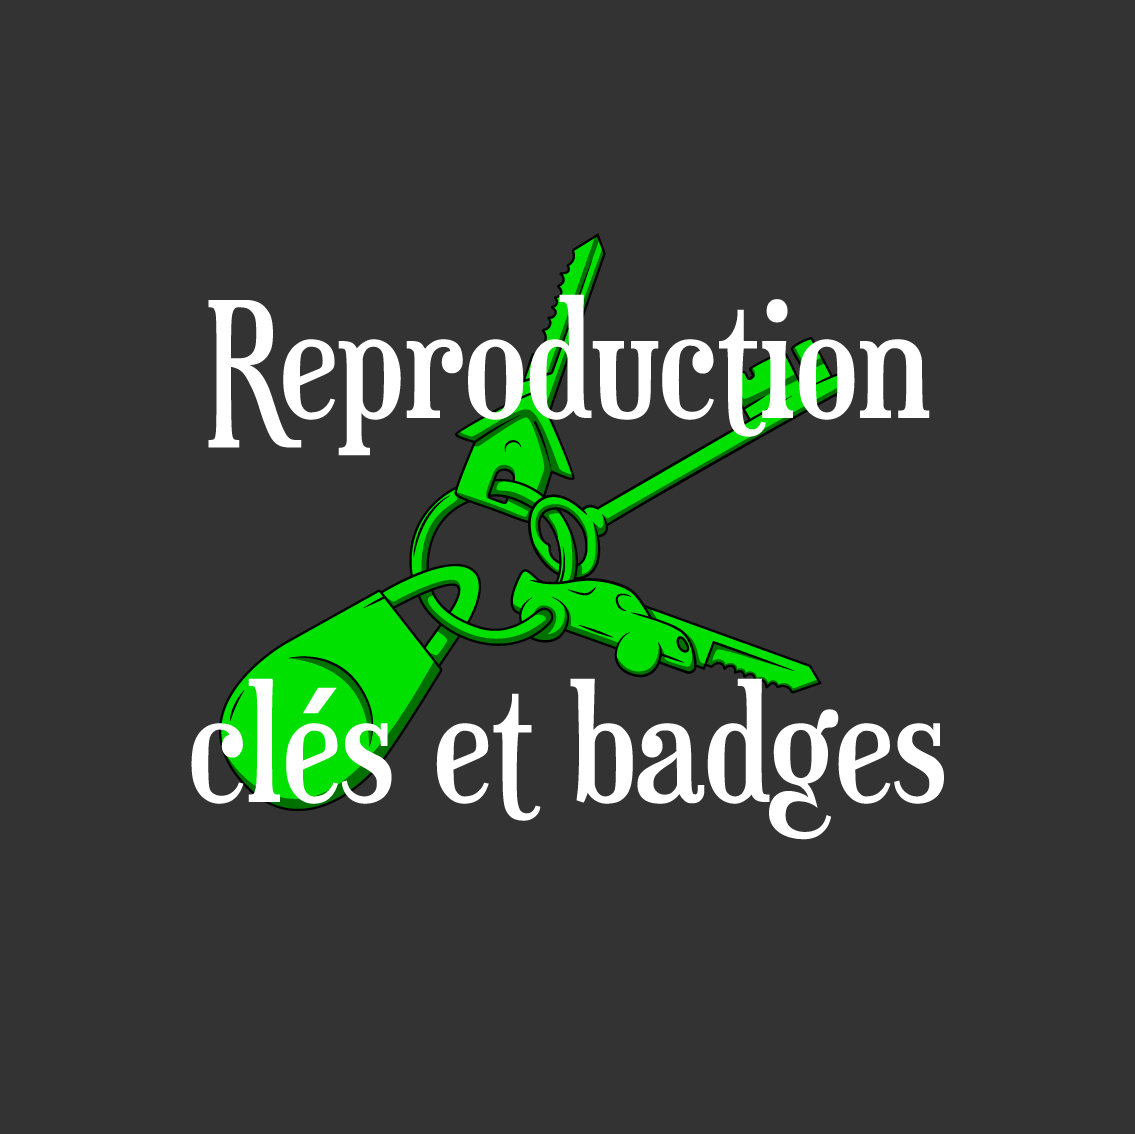 Reproduction clés et badges - Illustration et texte